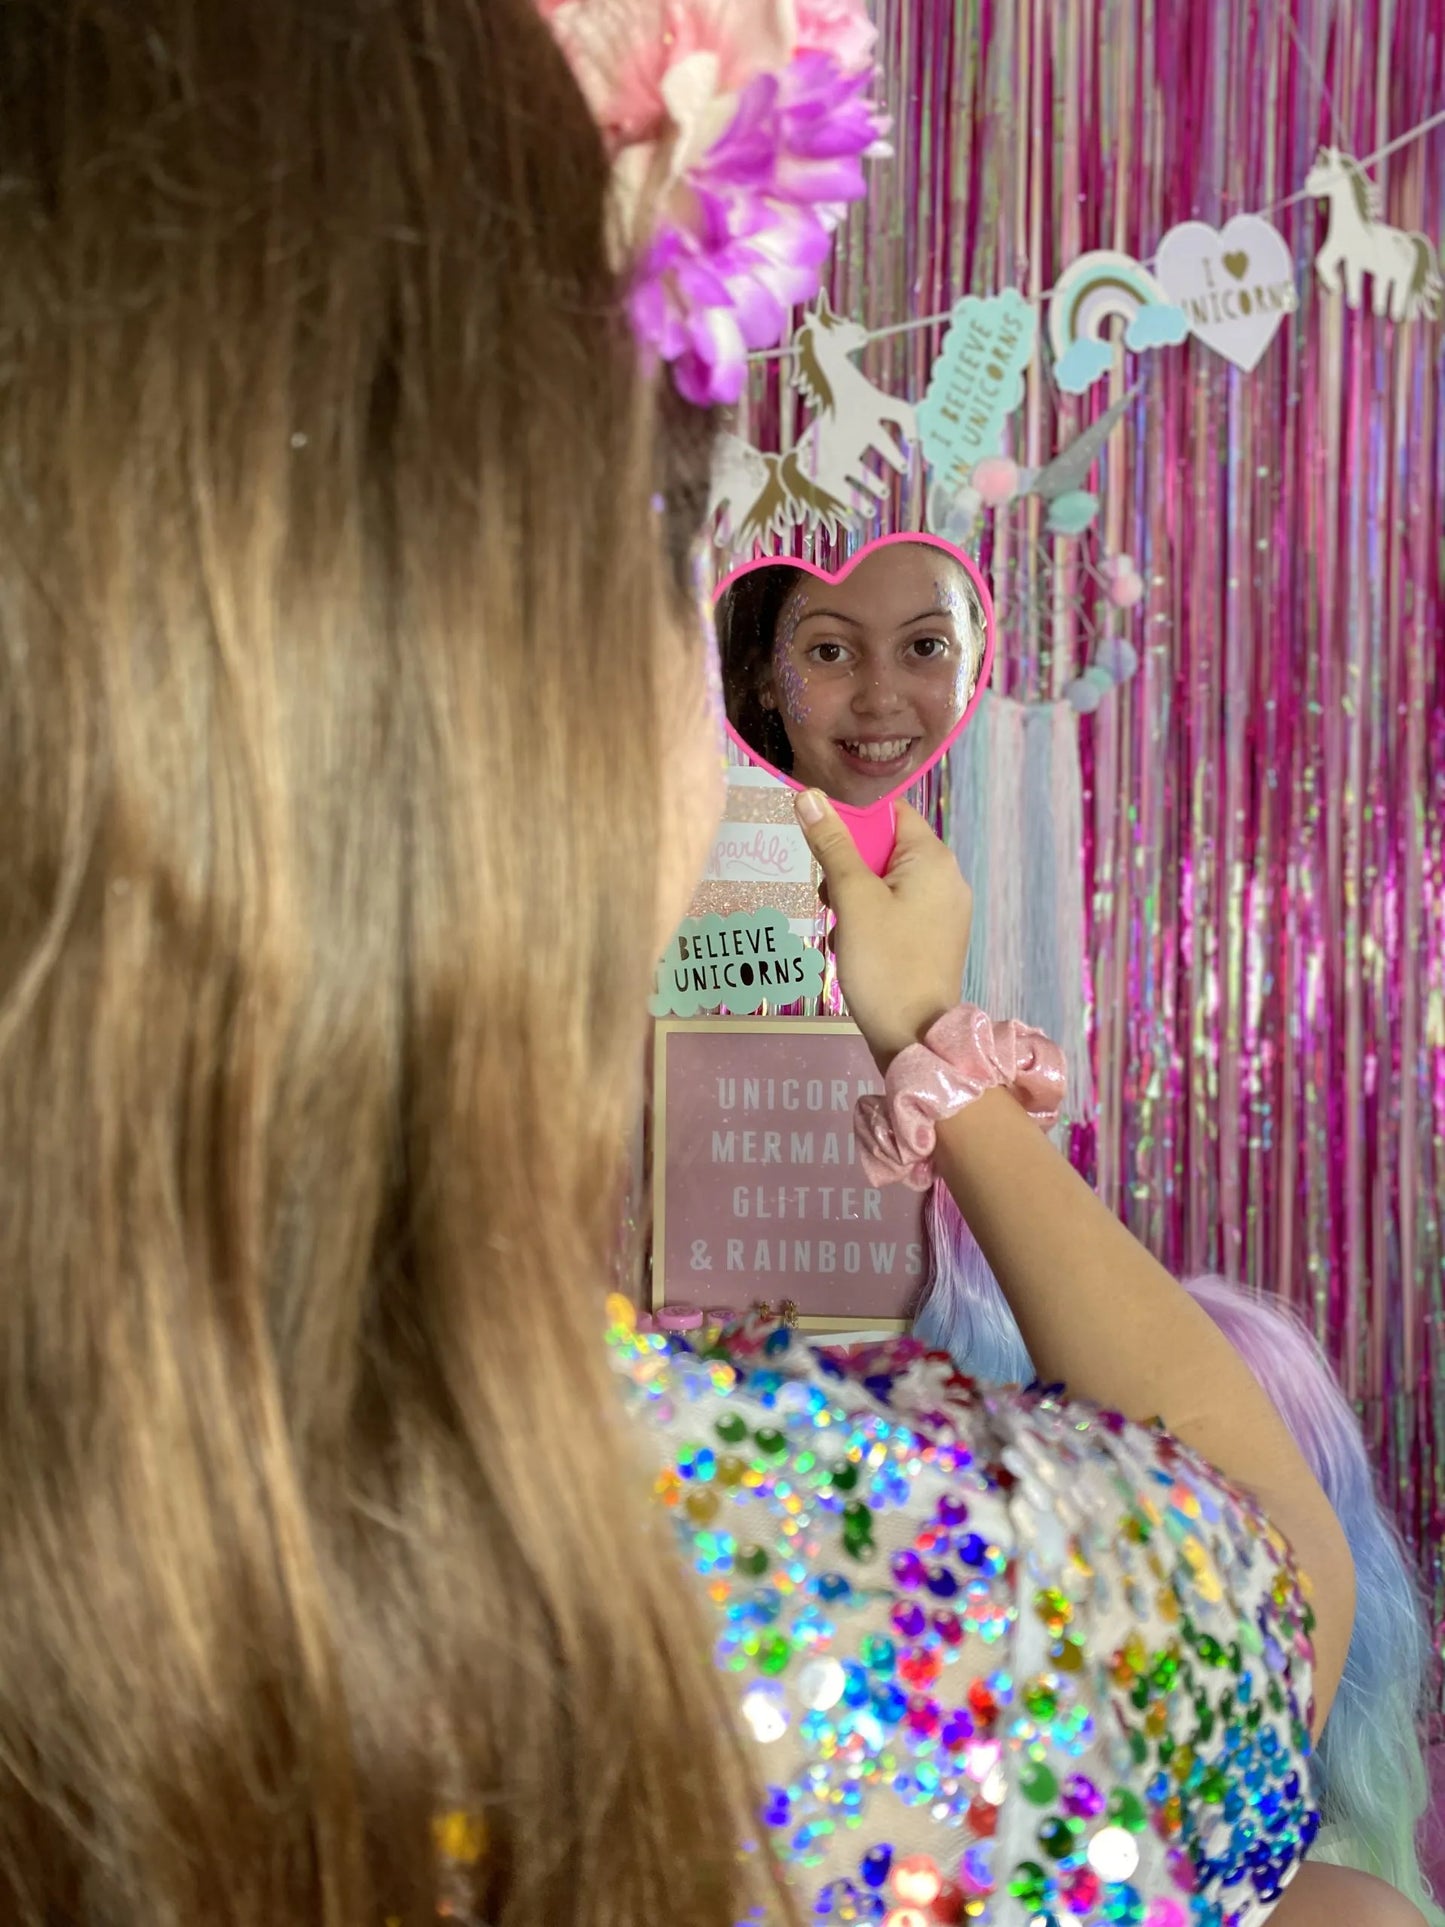 Glitter Girl Makeup Mirror